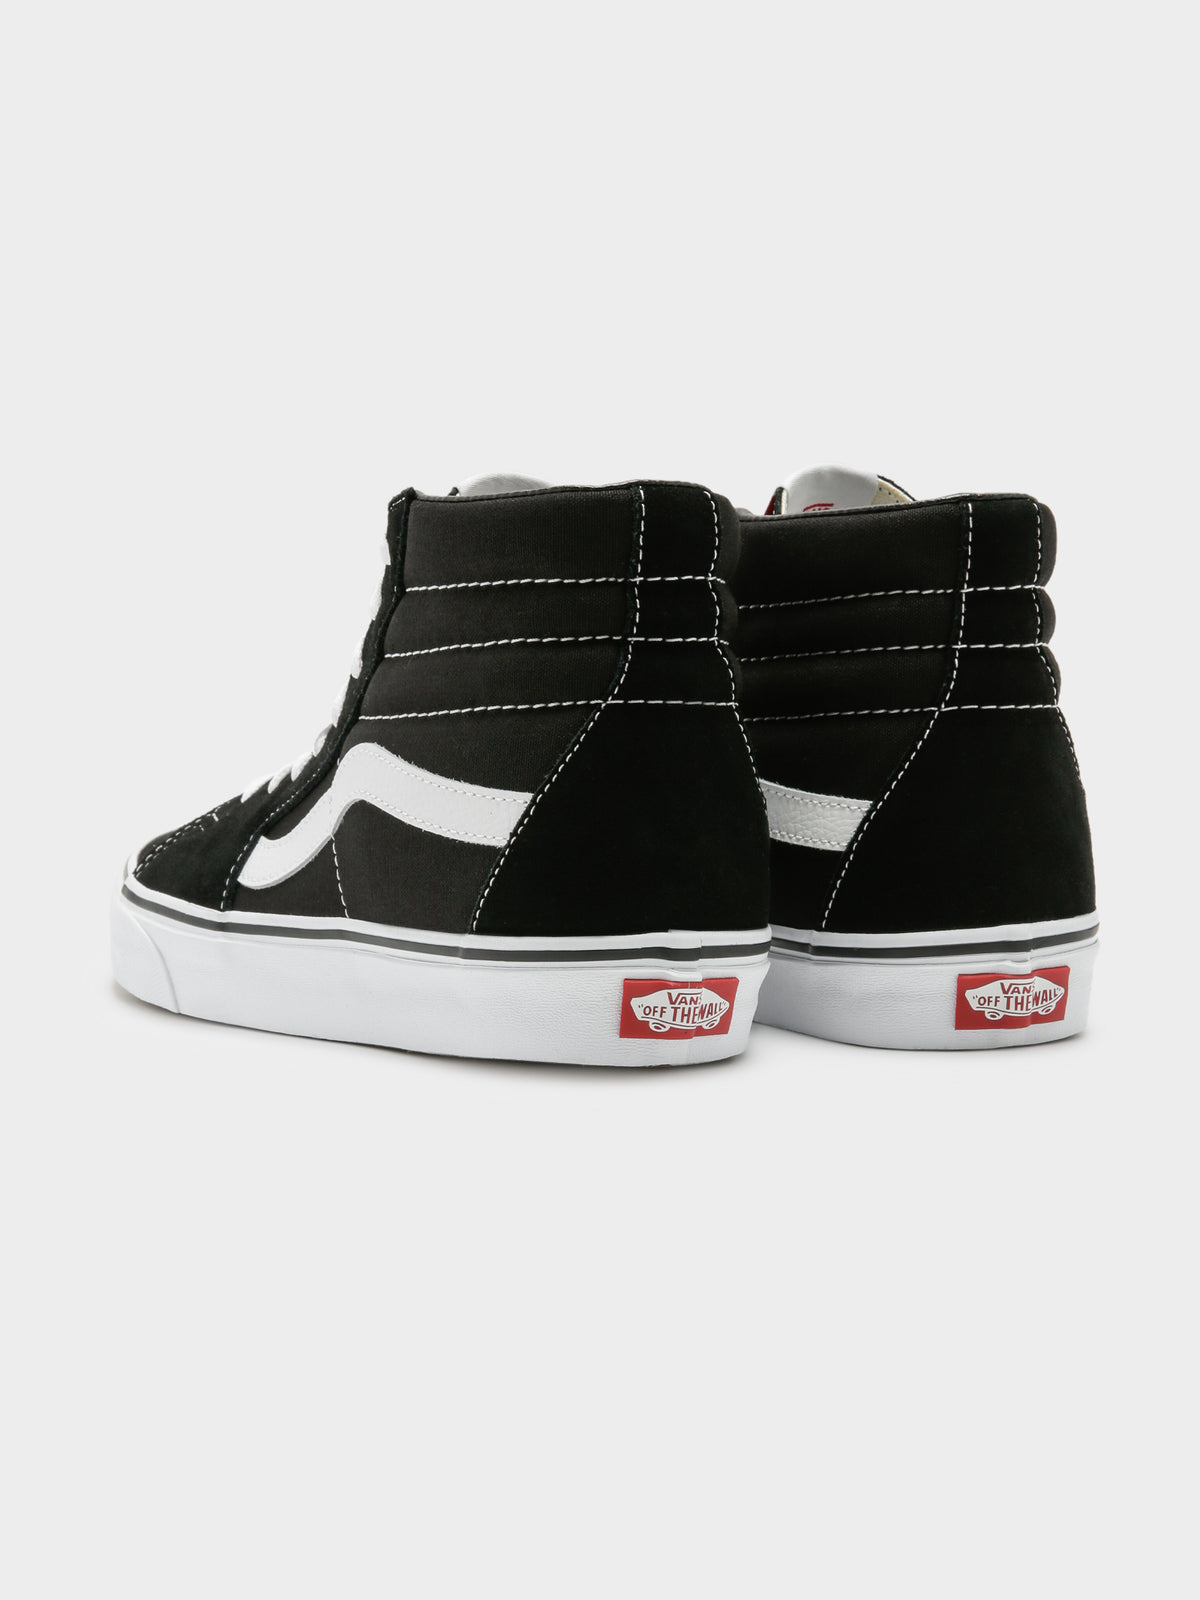 Unisex Sk8 Hightop Sneakers in Black